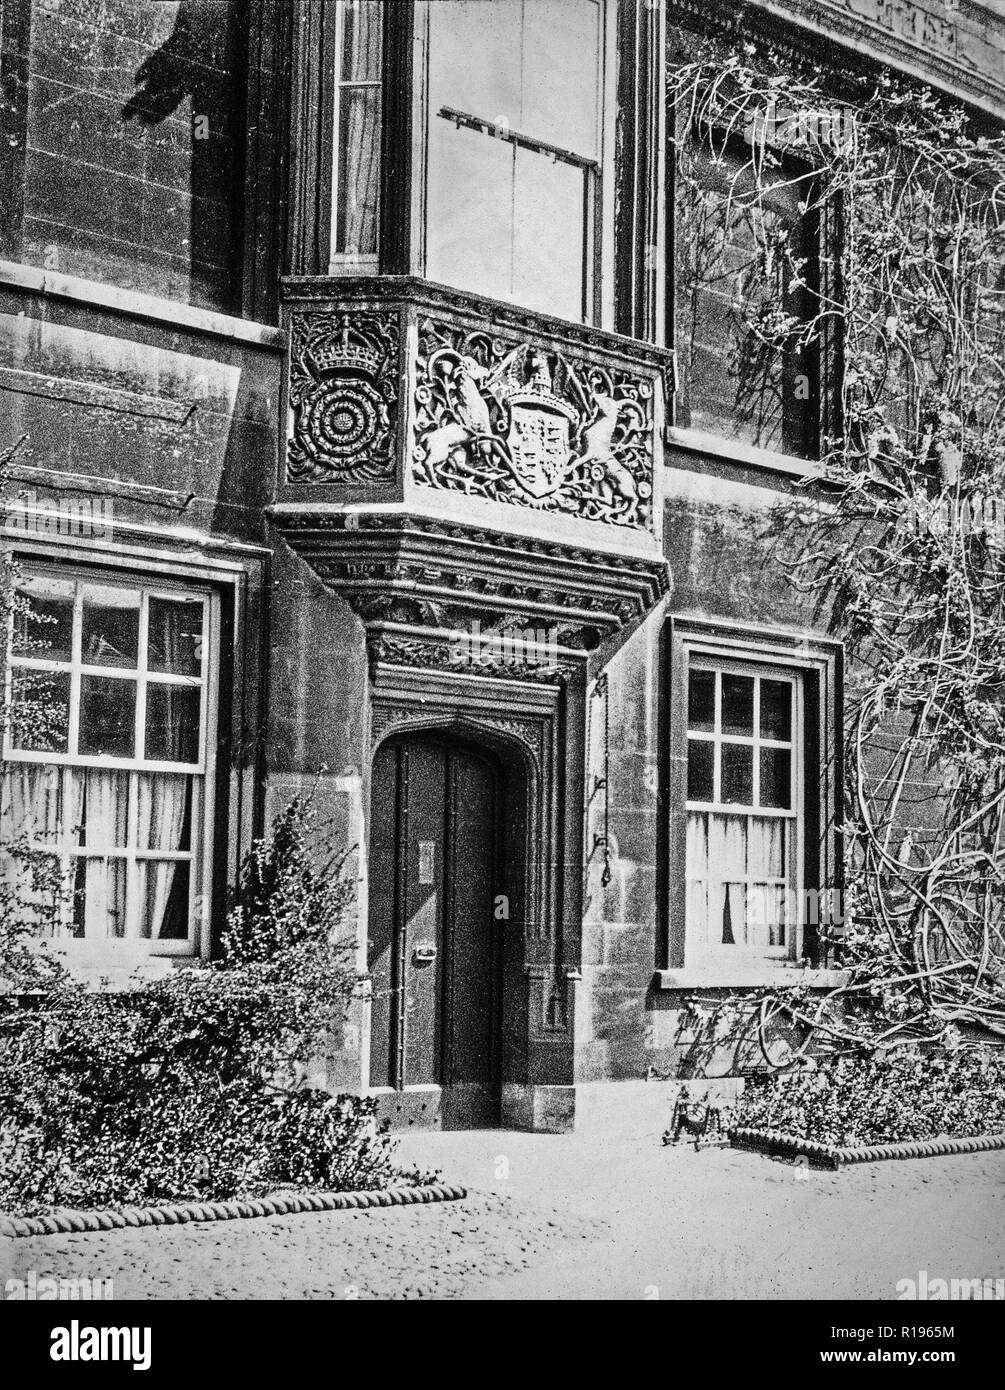 Vintage Photographie noir et blanc, prises en mai 1924, montrant l'entrée du Lodge au Christ's College, Université de Cambridge, Angleterre. Banque D'Images